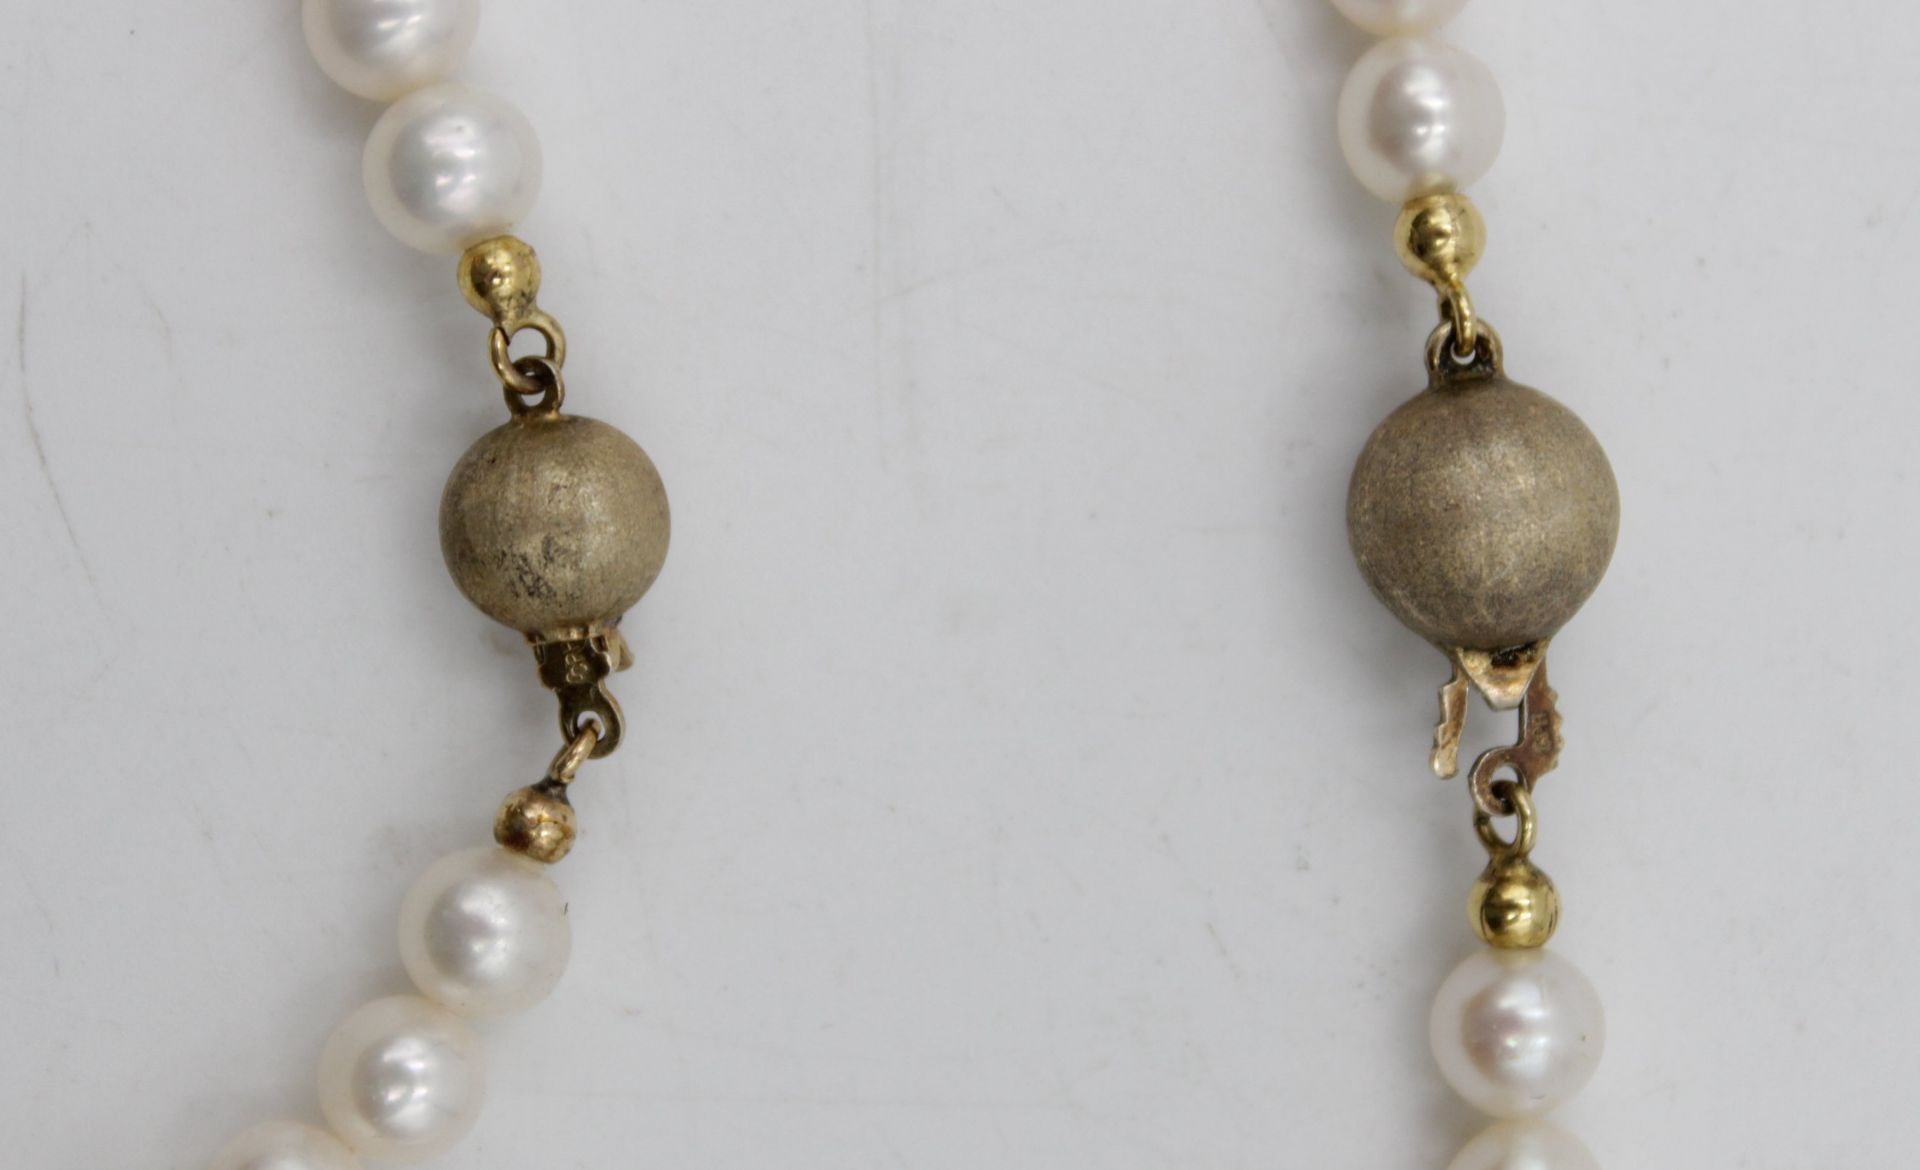 Armband und Kette mit Perlen Schließen Silber 925 vergoldet , Armband L- 18cm Kette L-42cm - Bild 4 aus 5